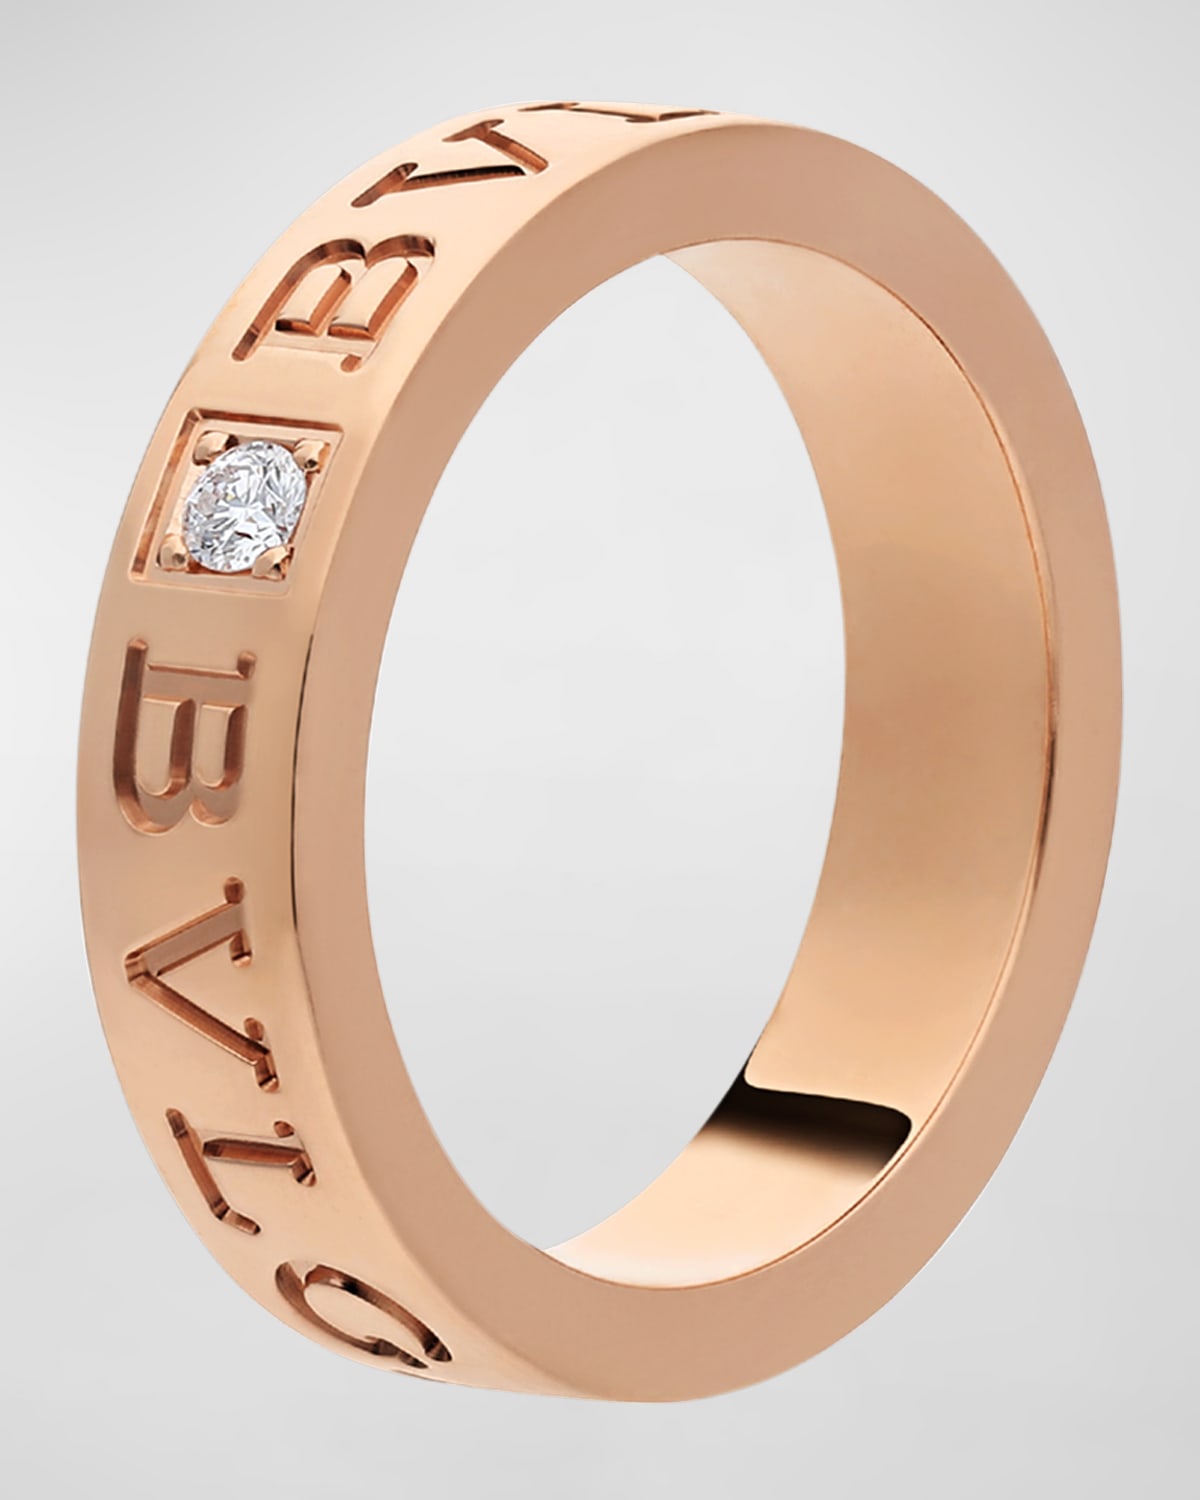 Unisex BVLGARI BVLGARI Pink Gold Band Ring, Size 53